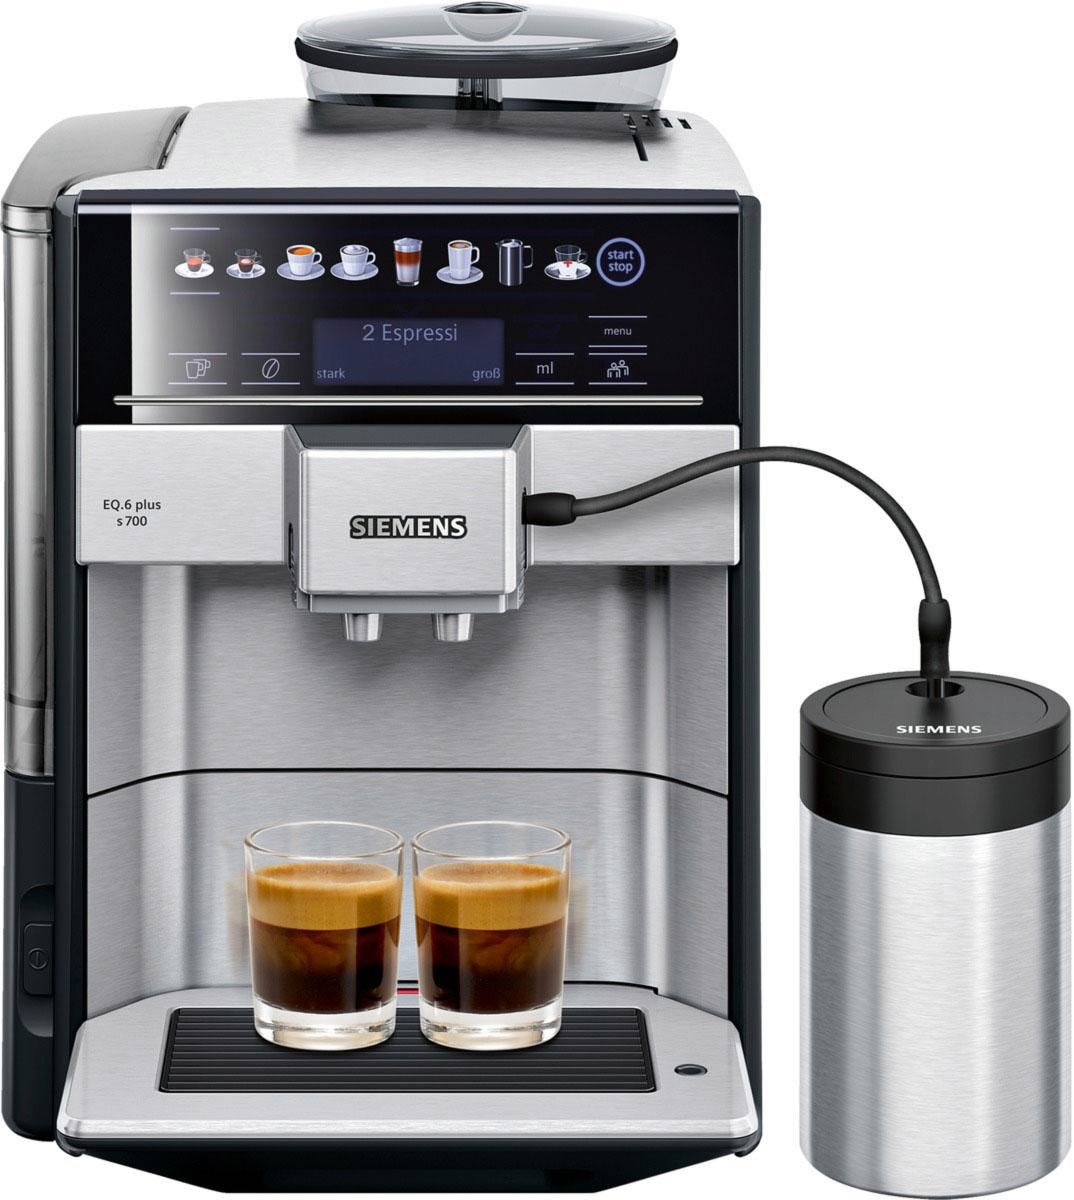 EQ.6 auf bestellen Scheibenmahlwerk Rechnung Tank, s700 1,7l Kaffeevollautomat SIEMENS plus TE657M03DE,